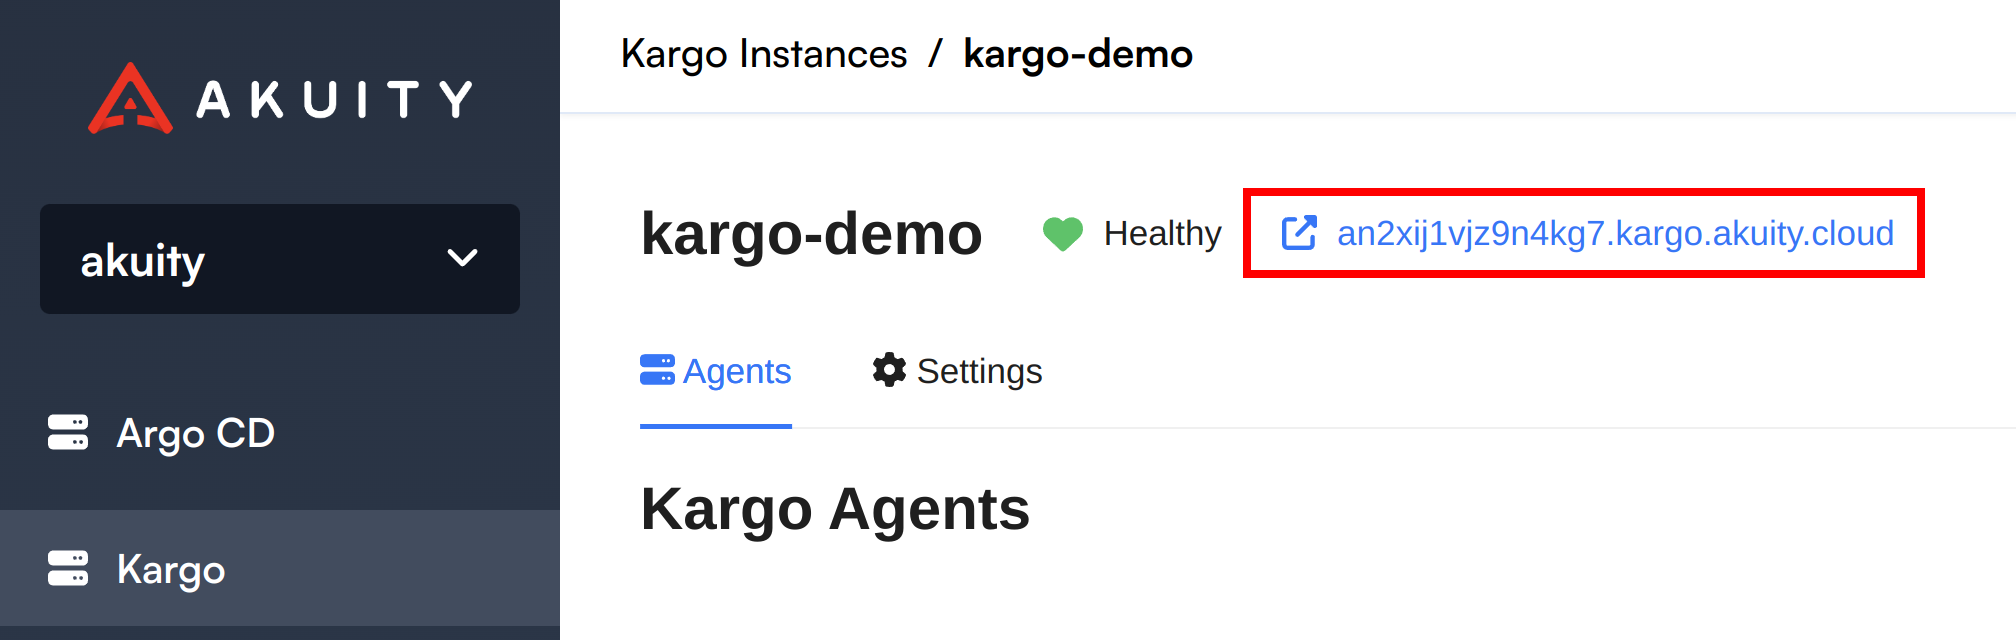 Kargo Instance URL